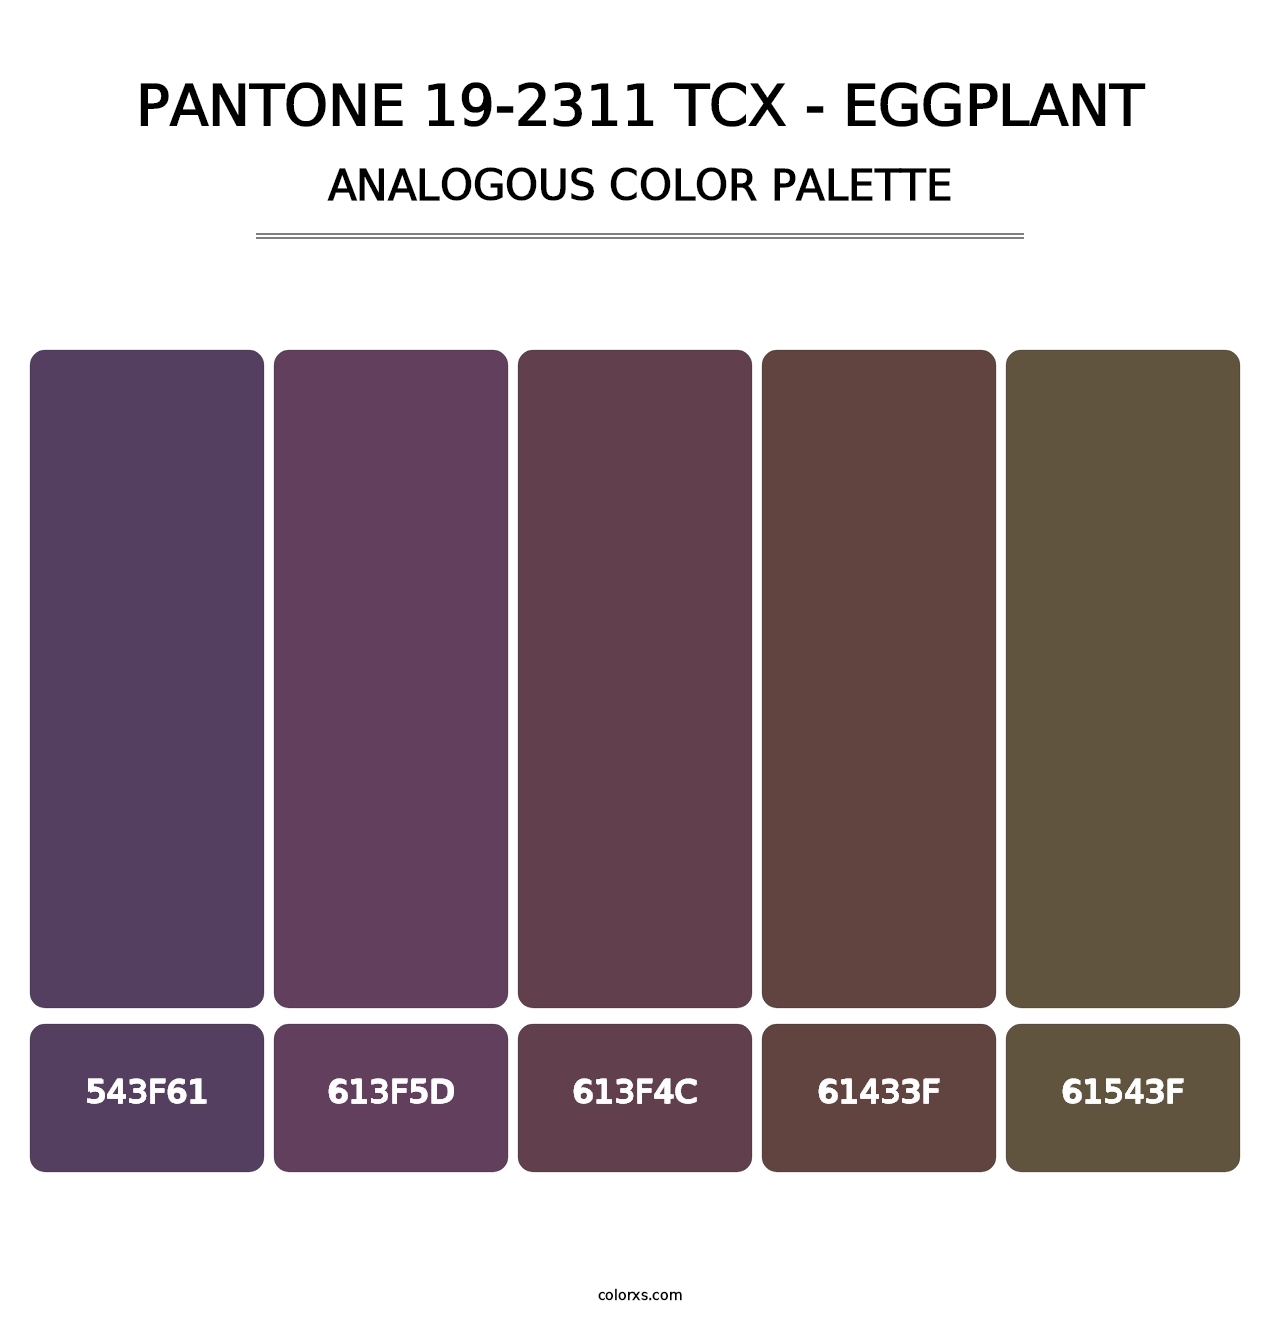 PANTONE 19-2311 TCX - Eggplant - Analogous Color Palette